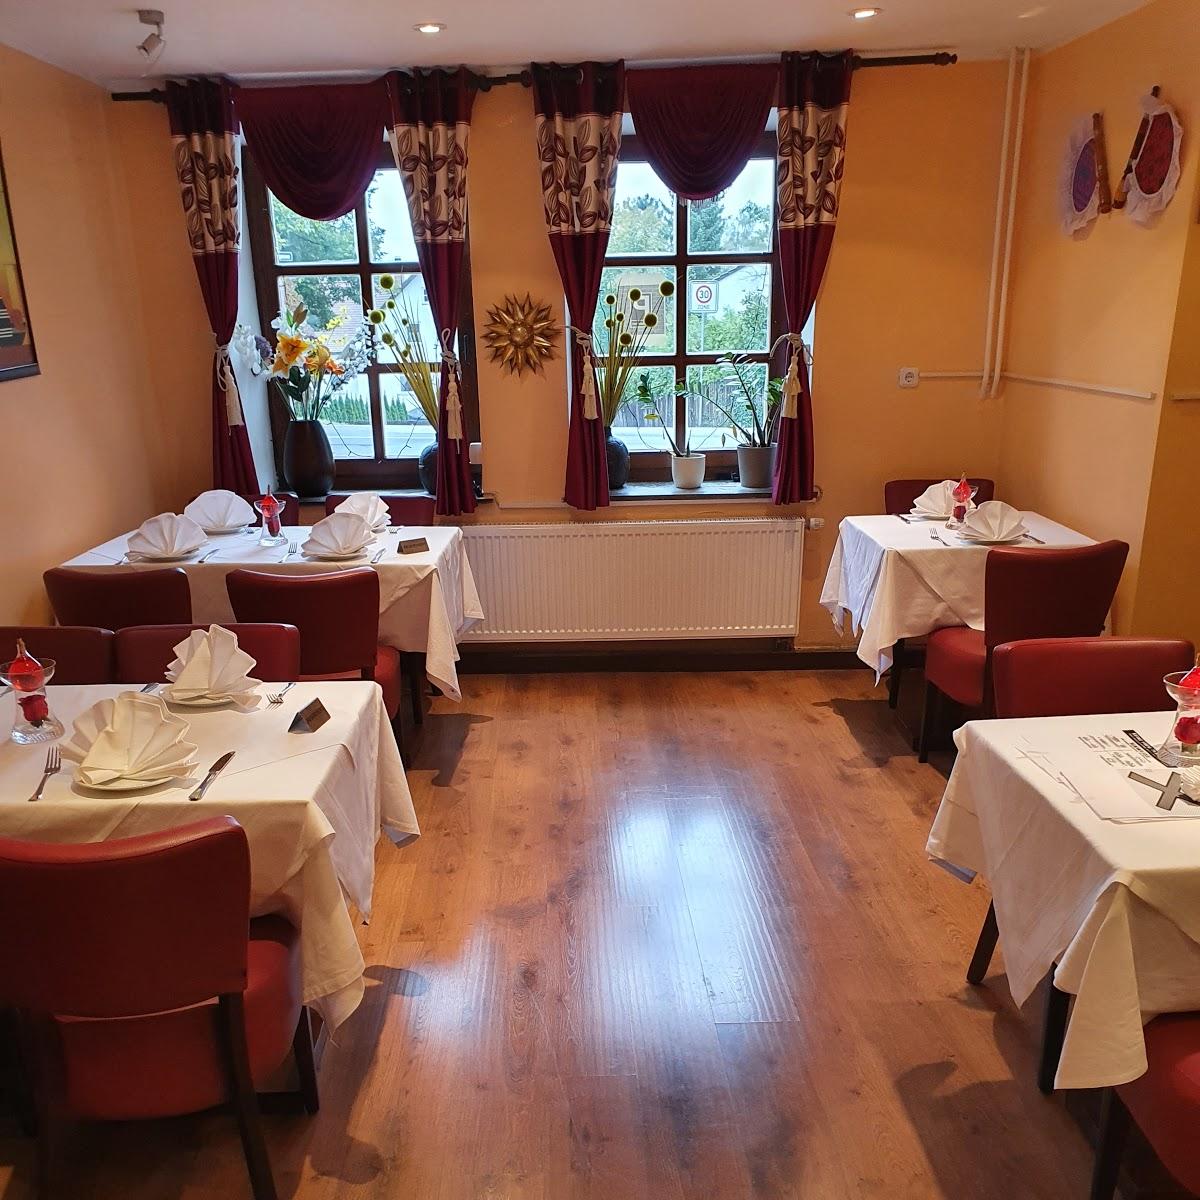 Restaurant "Der Punjab - Indisches Restaurant" in  Landshut